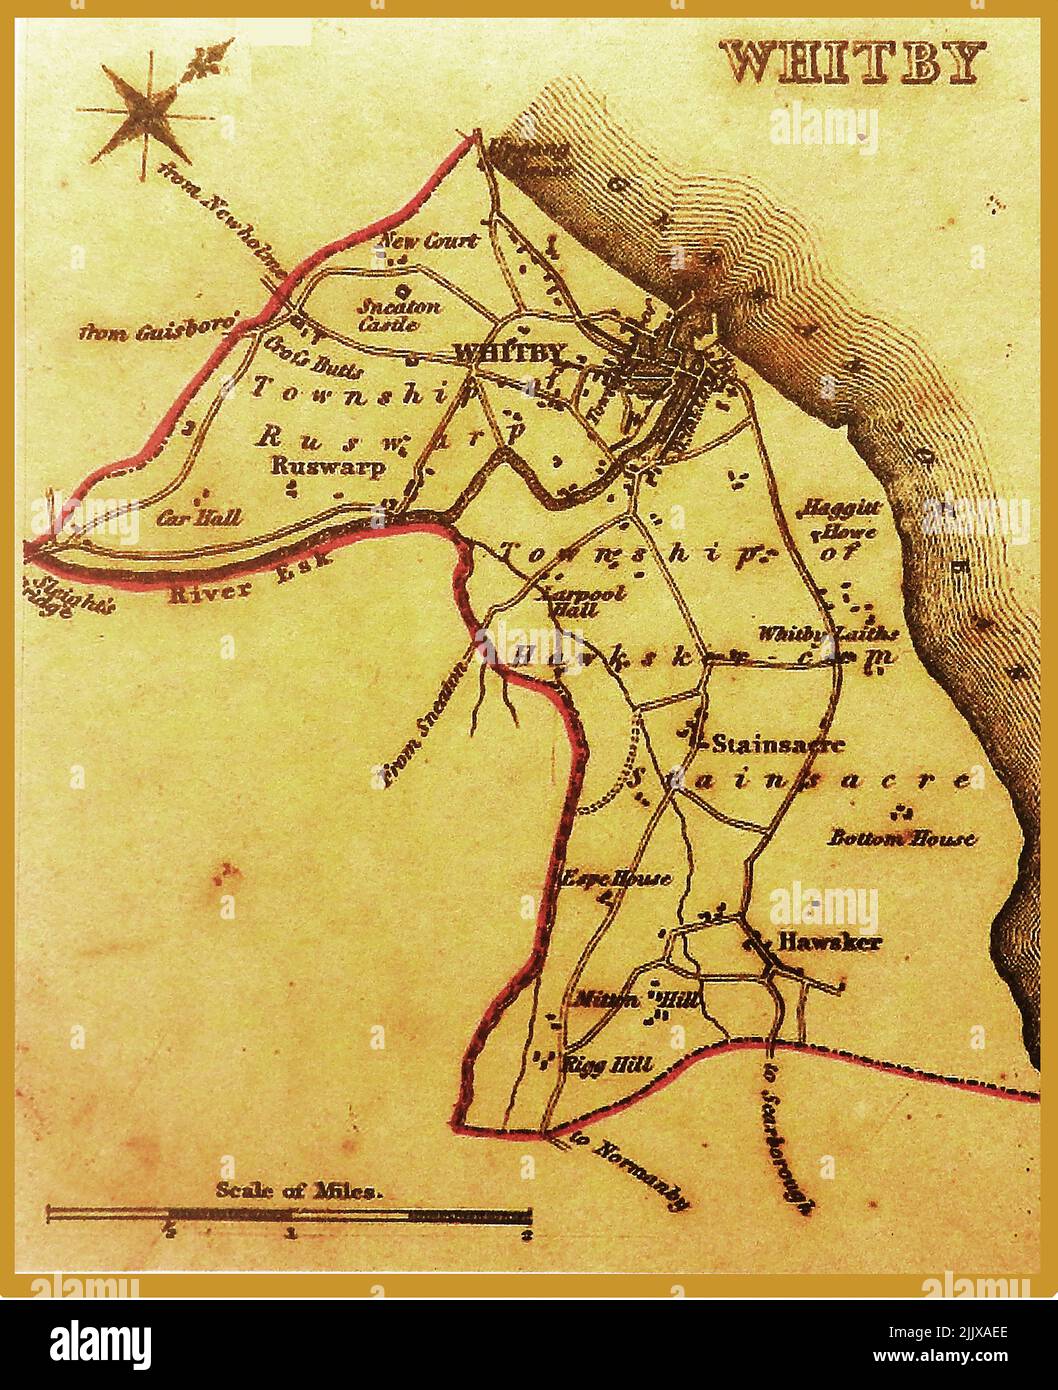 Un antiguo mapa de Whitby, Yorkshire en los años 1830 Foto de stock